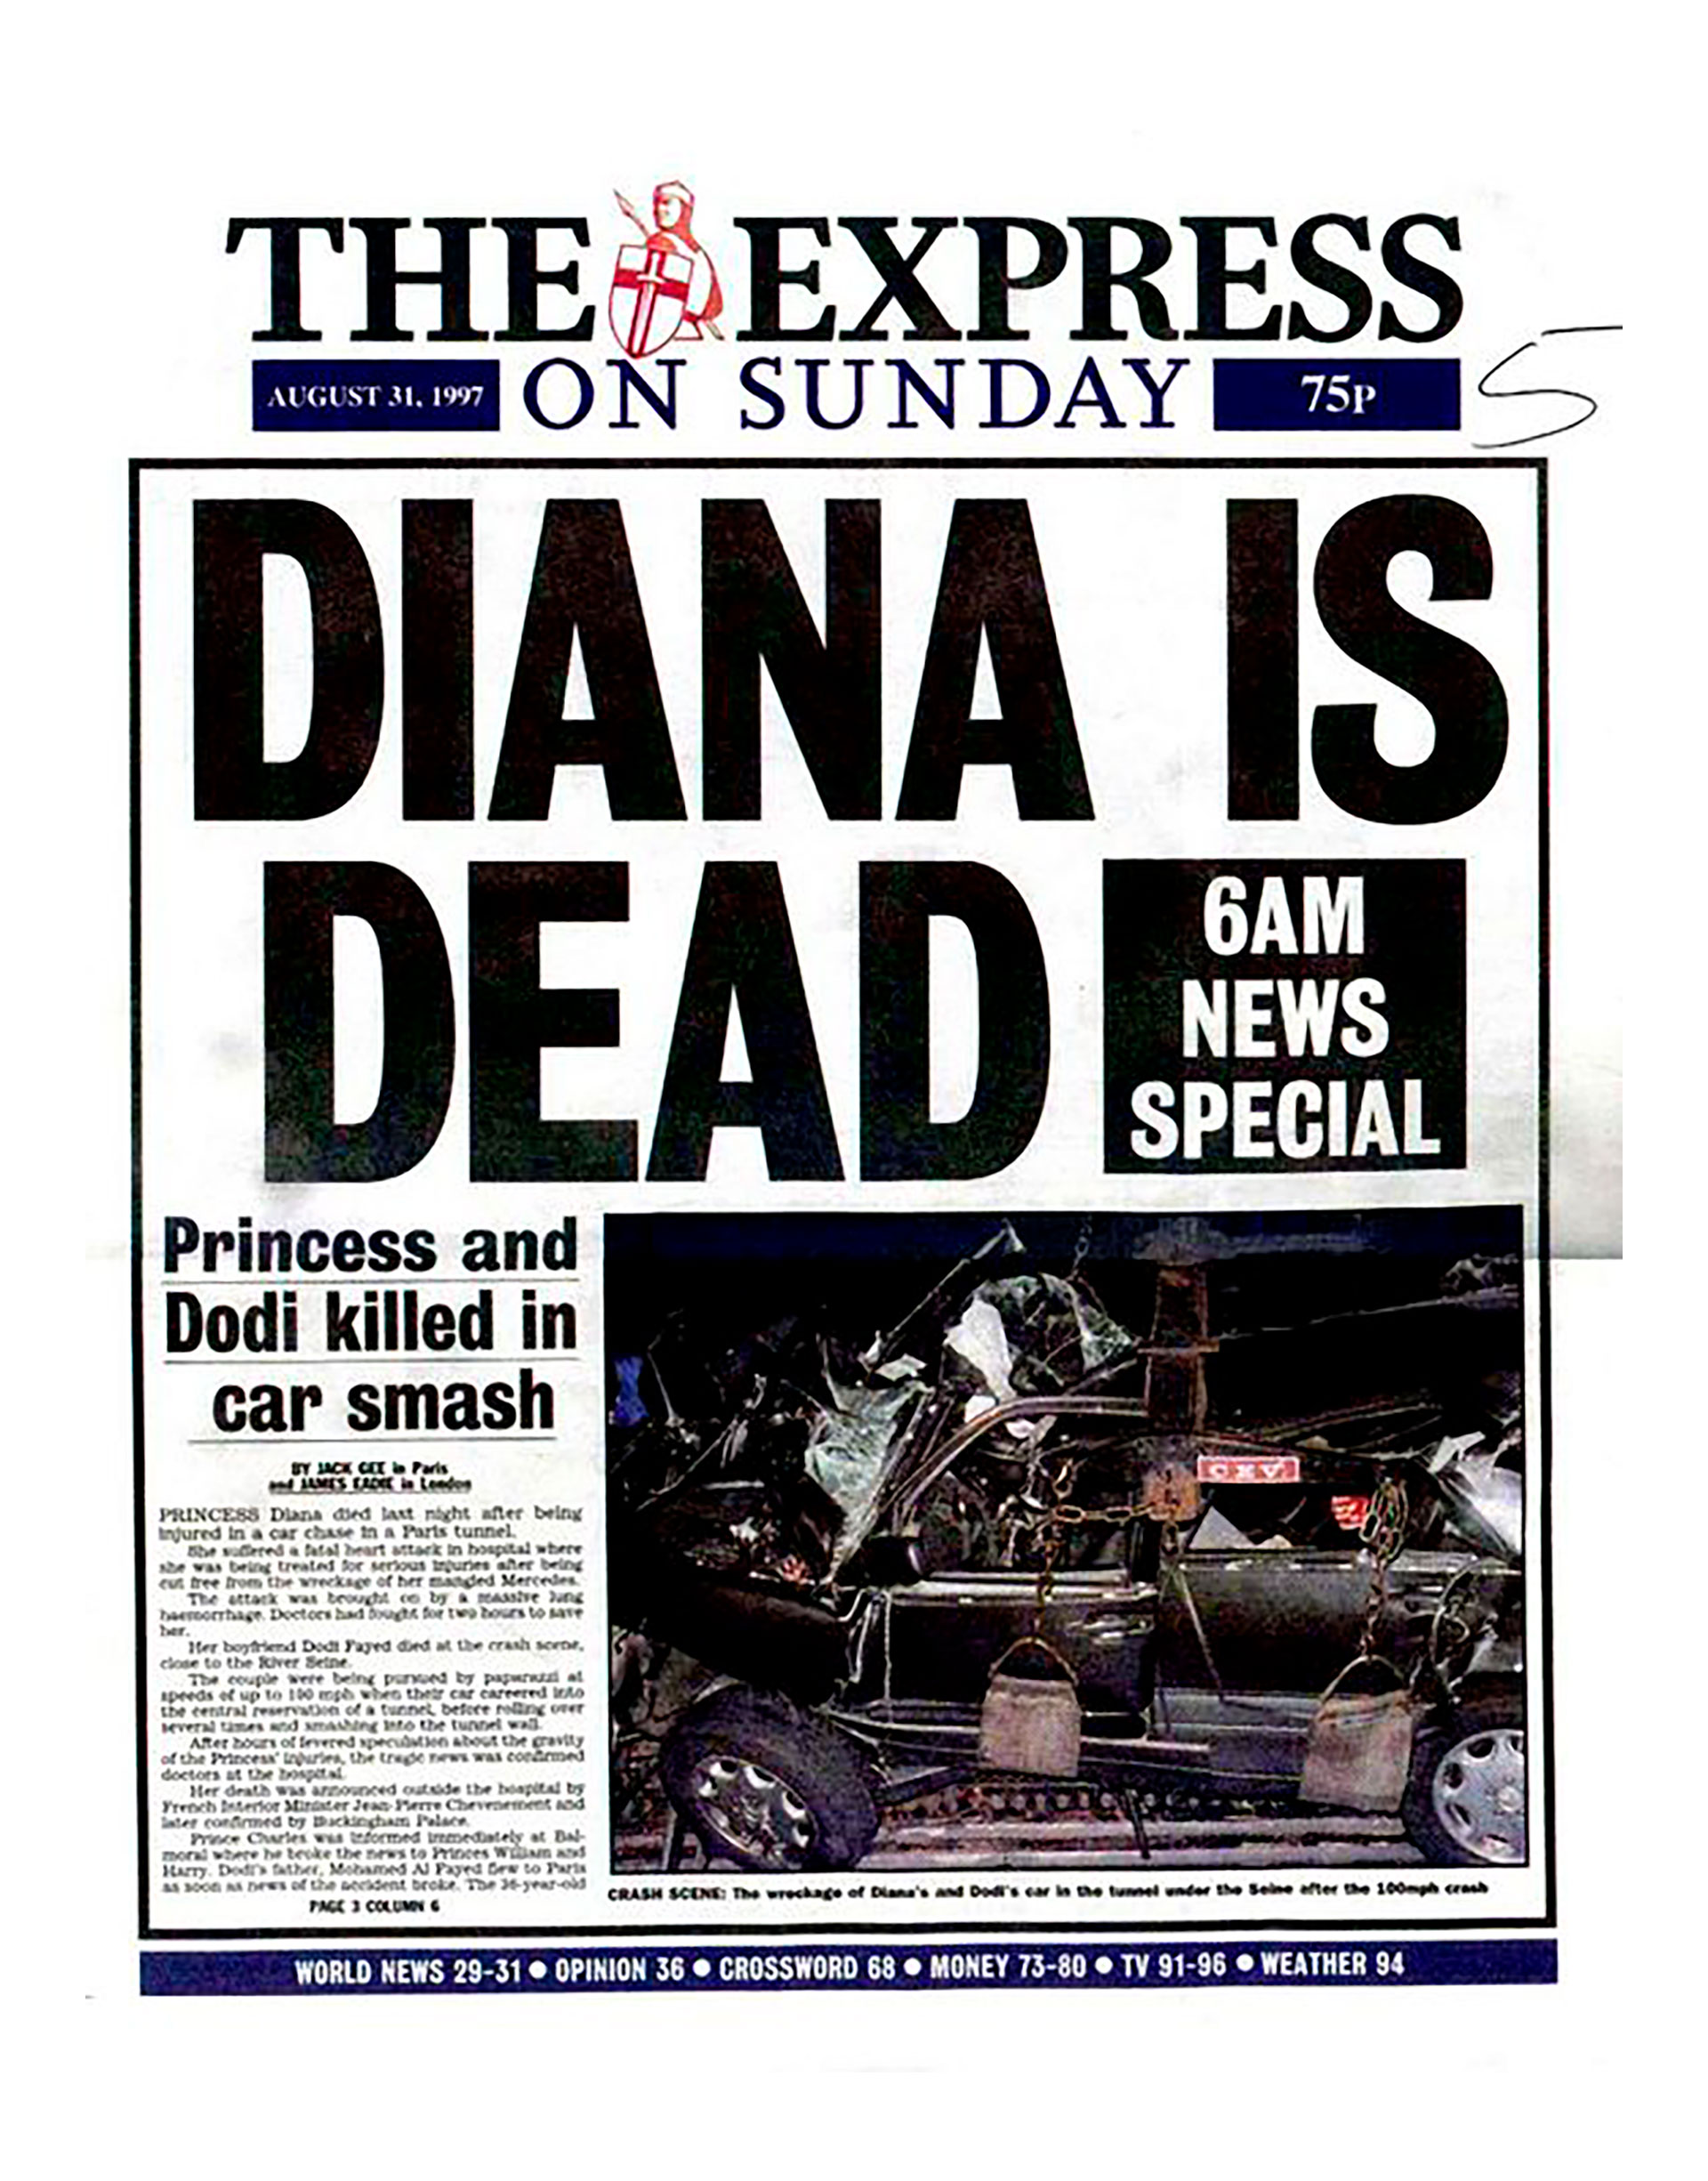 Un diario británico anuncia la muerte de Lady Di. Fue en 1997, tras una tragedia automovilística.